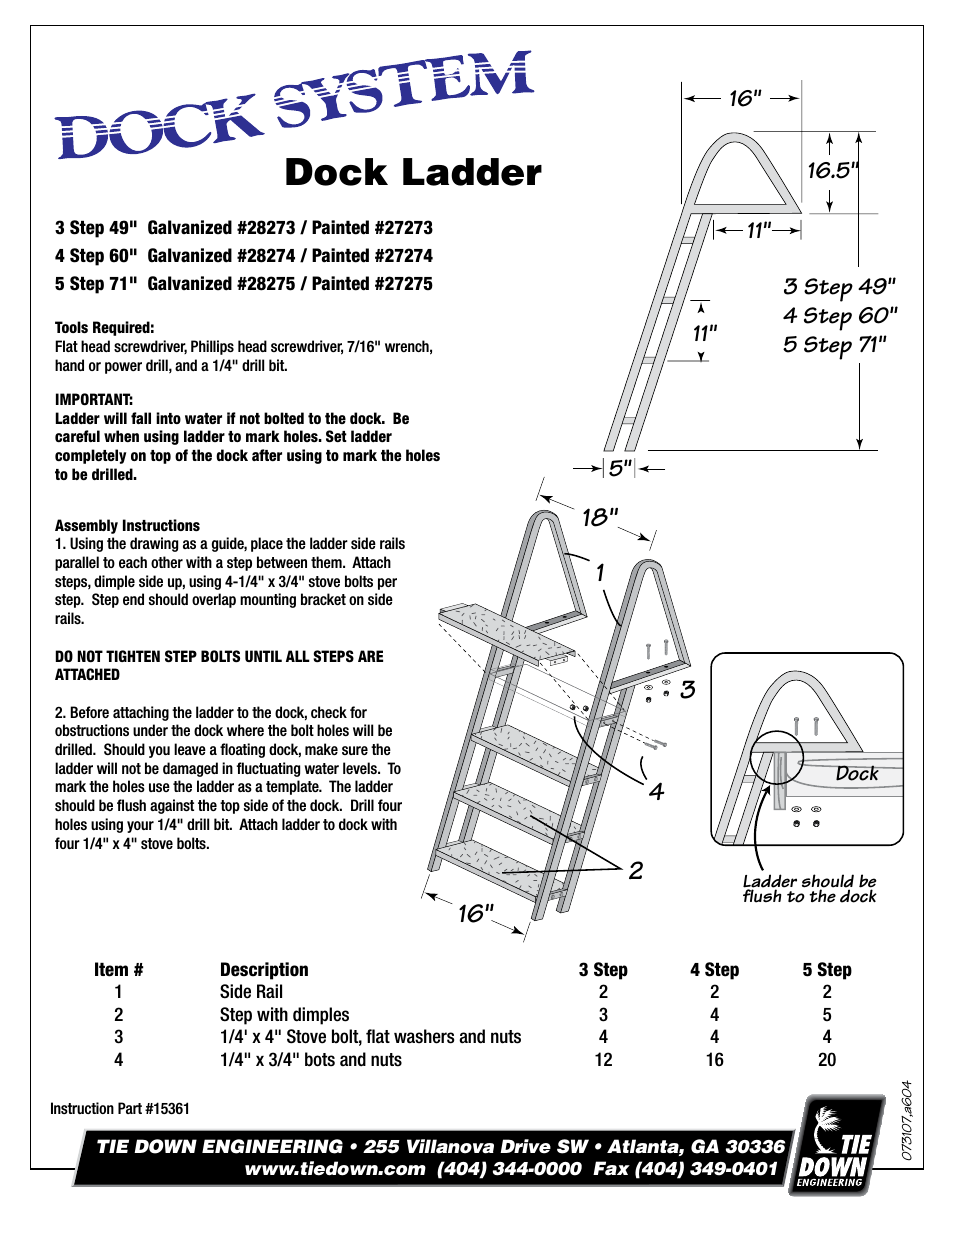 Dock Ladder Speed Release